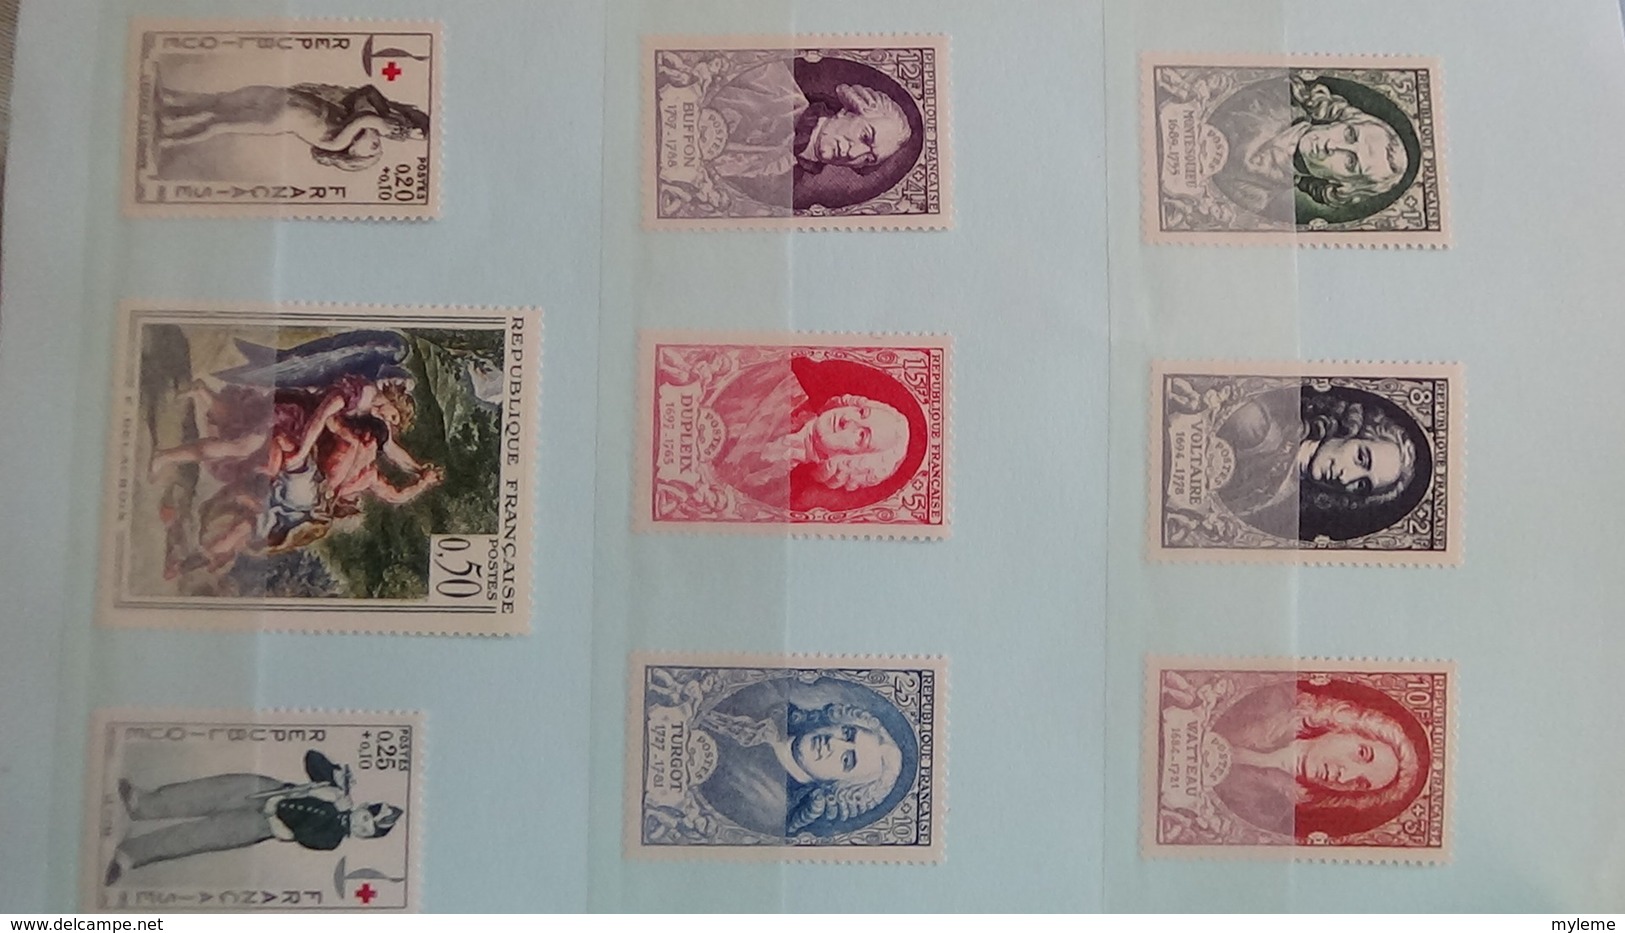 Belles séries et timbres ** de France dont 930à935, philatec, 841, carnet croix rouge ... Voir commentaires !!!